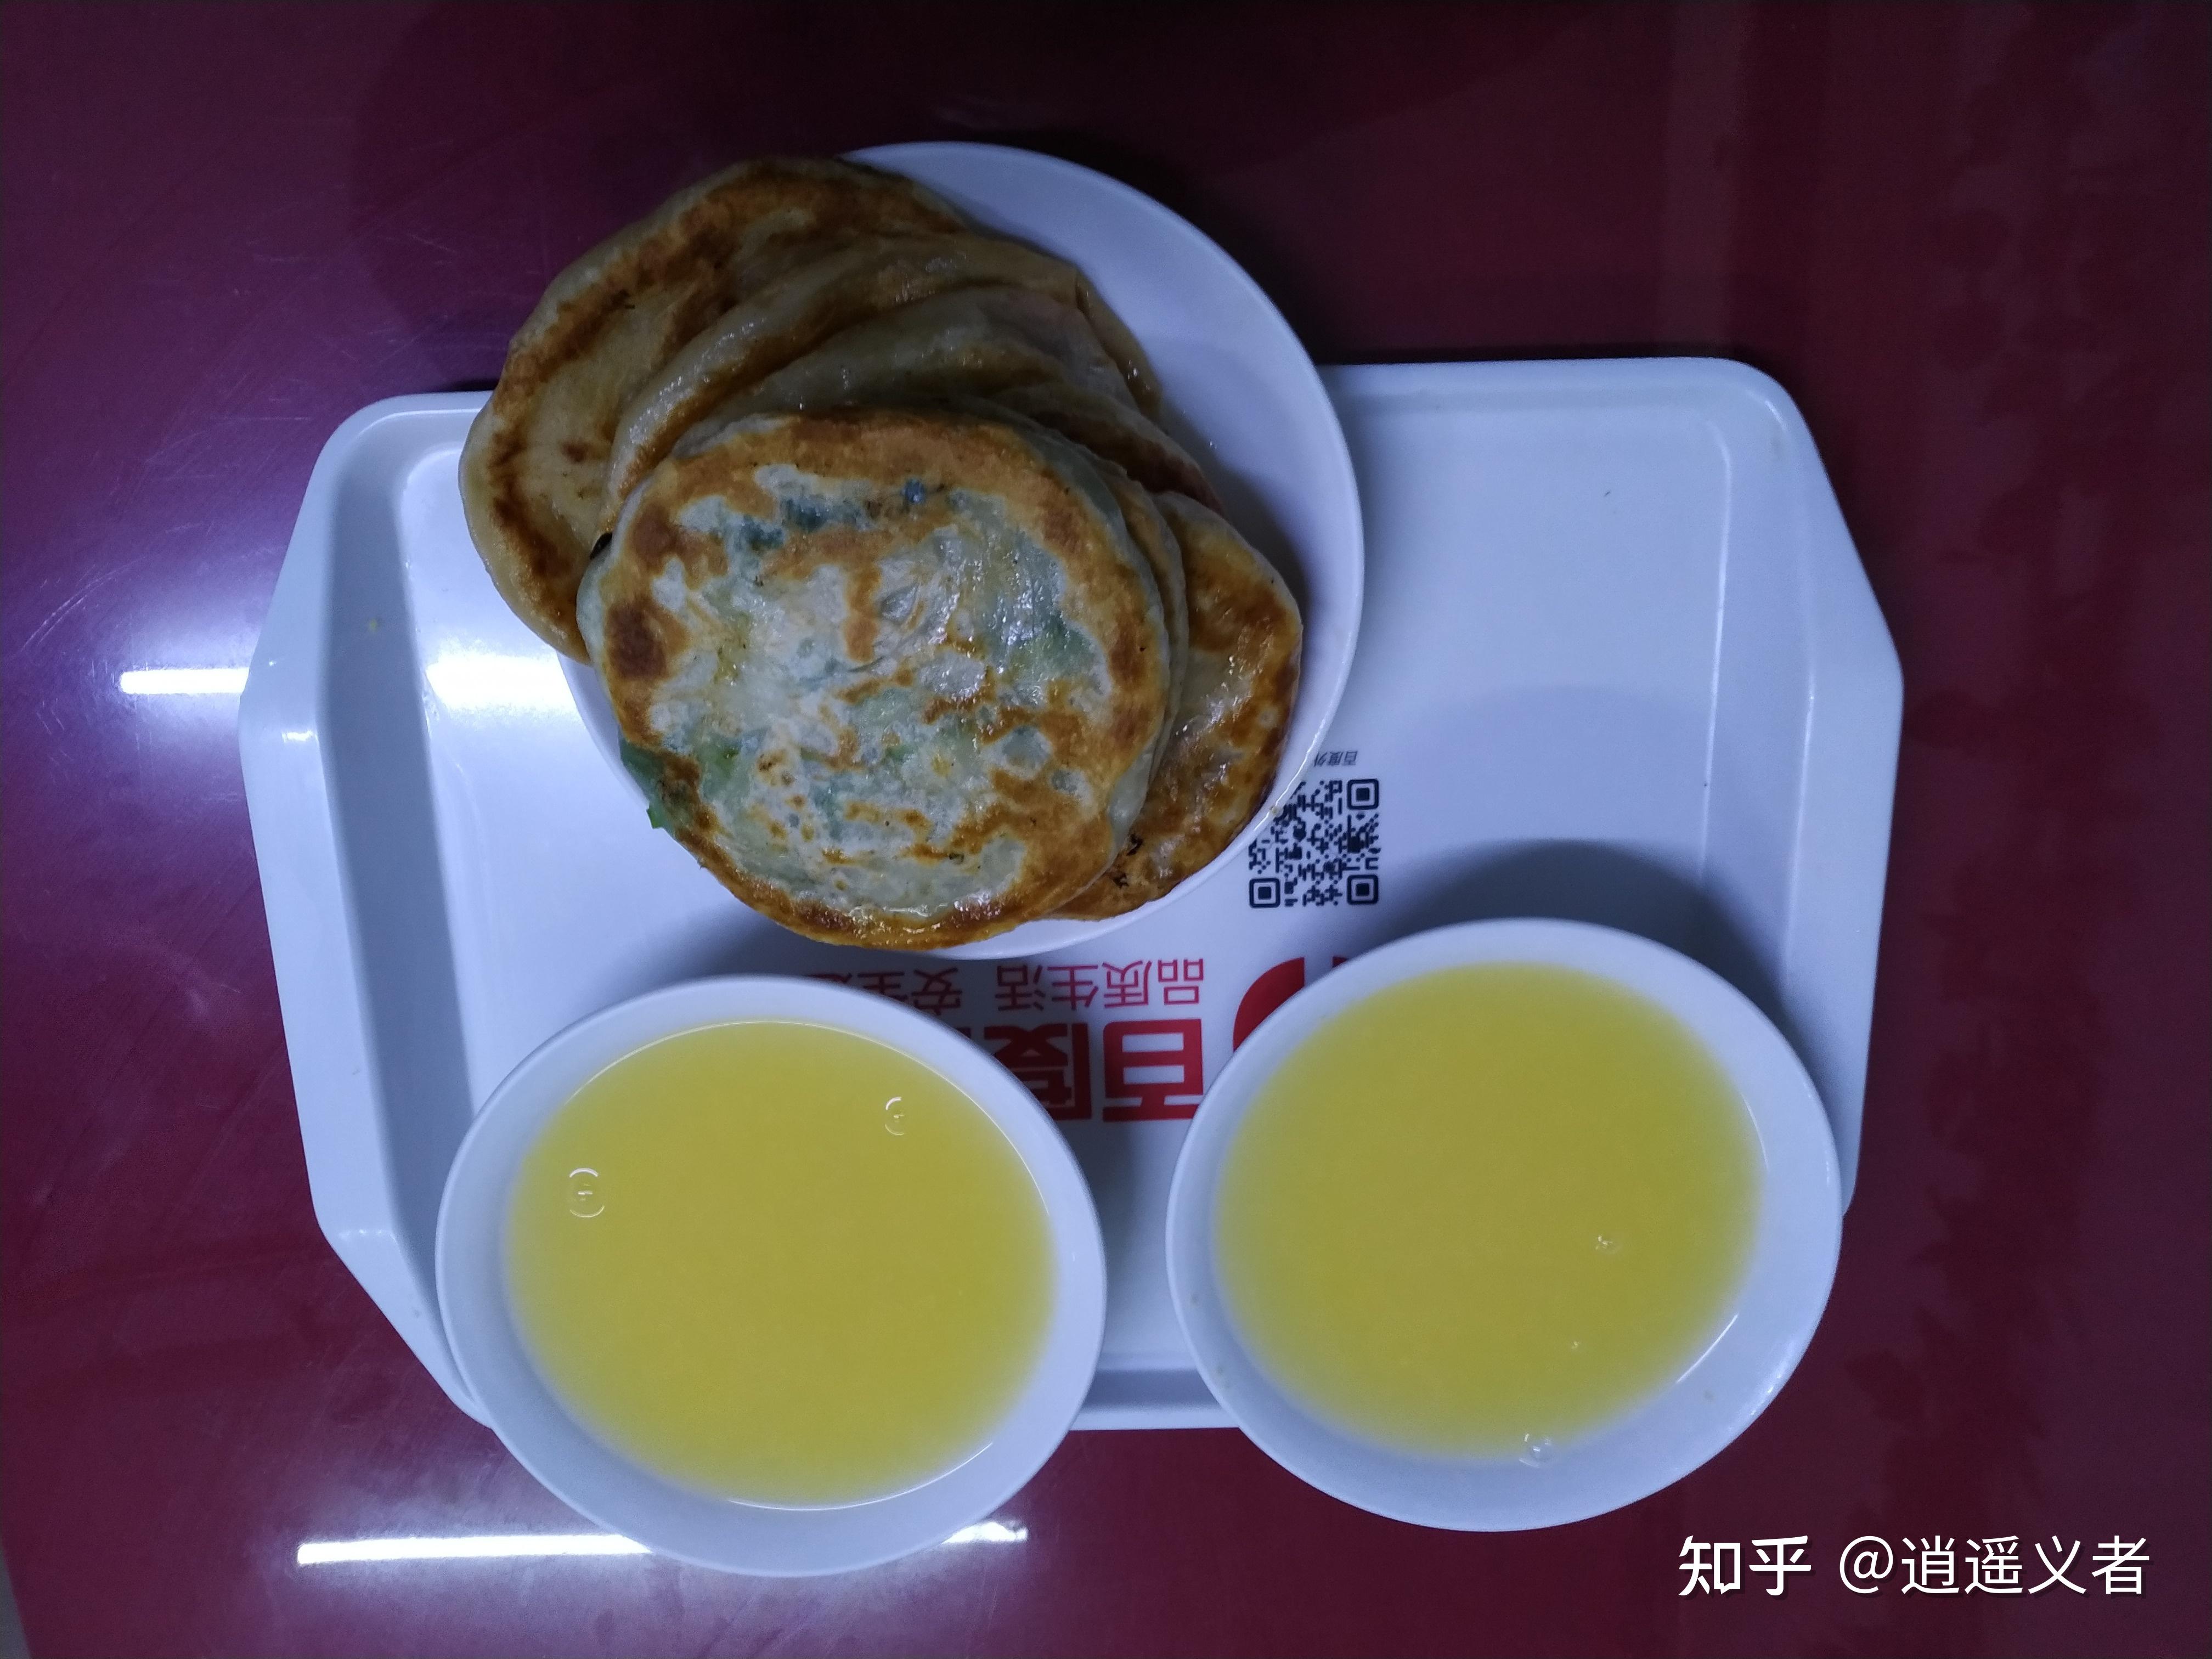 麦多馅饼：中国传统面食与西方面点创新的完美结合 - 知乎